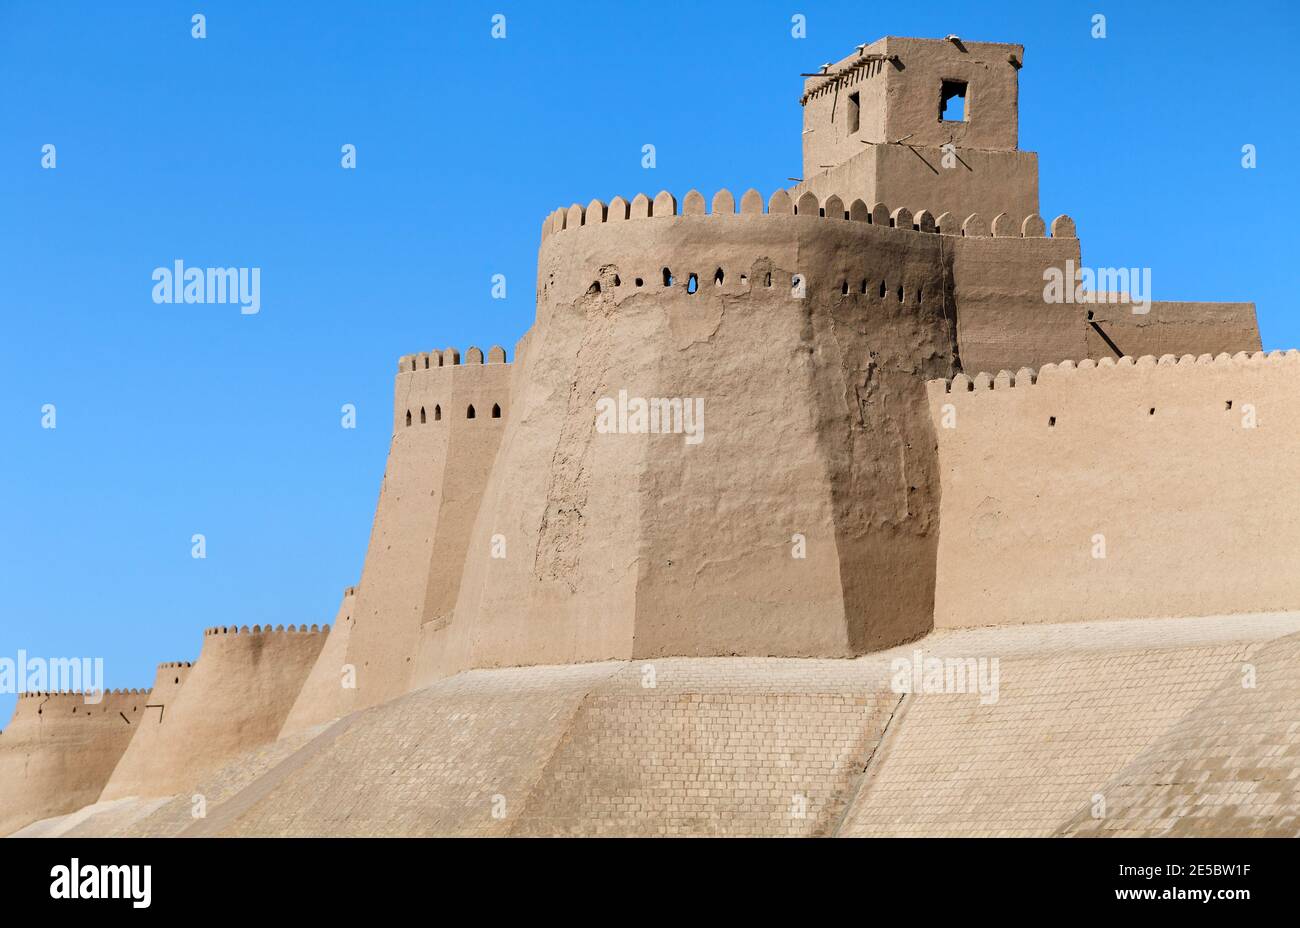 Mur d'Itchan Kala (Ichon Qala) - Khiva (Chiva, Heva, Xiva, Chiwa, Khiveh) - province de Xorazm - Ouzbékistan - ville sur la route de la soie Banque D'Images